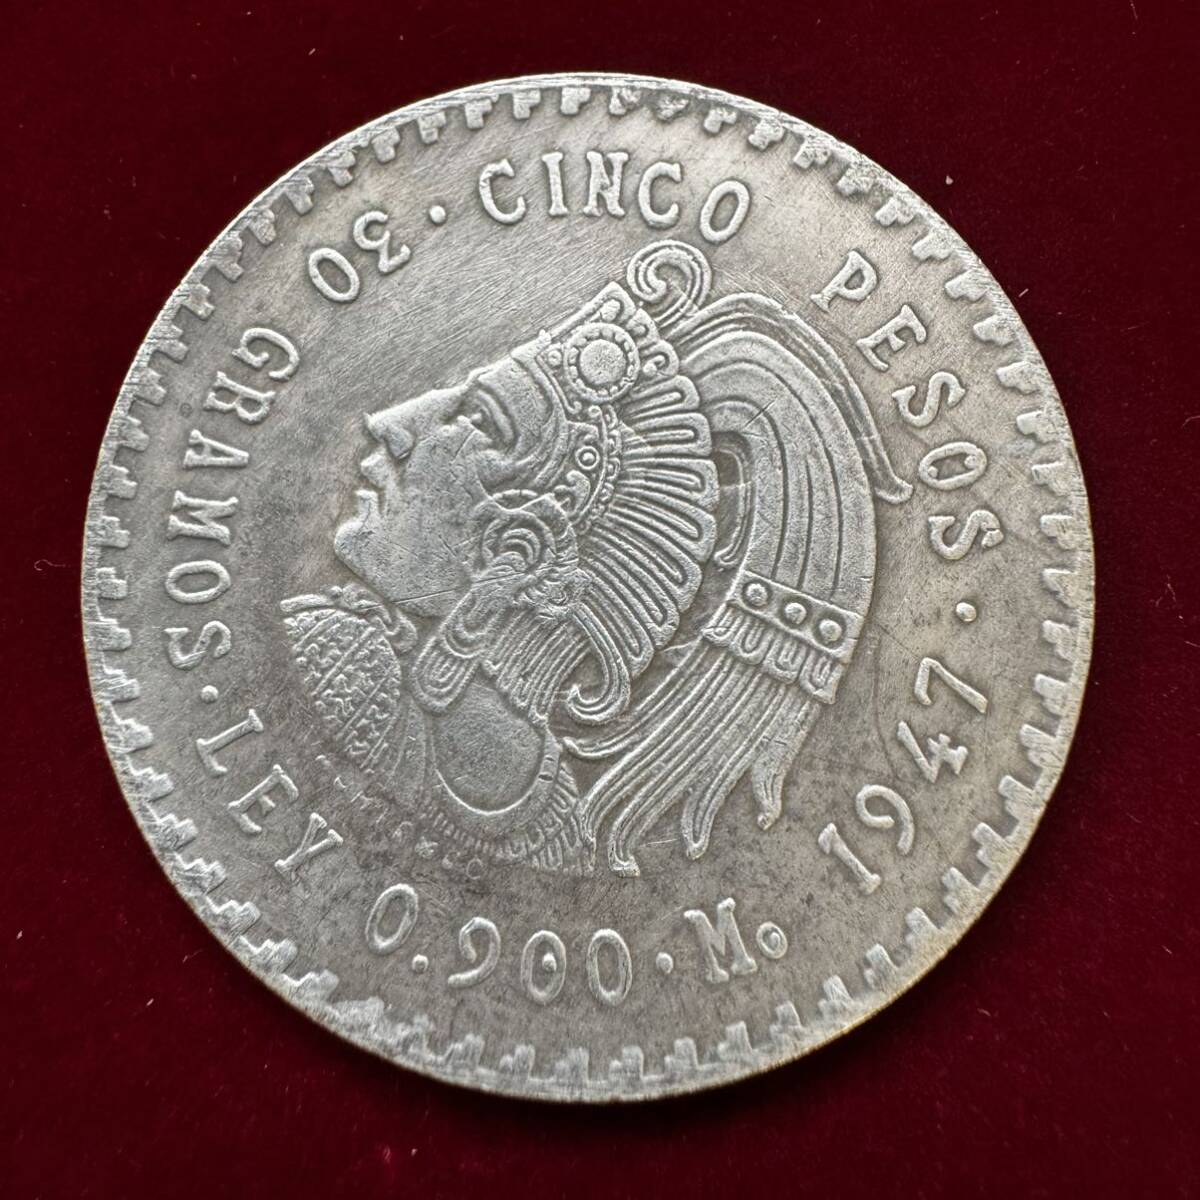 メキシコ アステカ族 硬貨 古銭 1947年 「メキシコ合衆国」 「族長クアウテモック」銘 ペソ 国章 鷲 コイン 銀貨 外国古銭 海外硬貨 の画像1